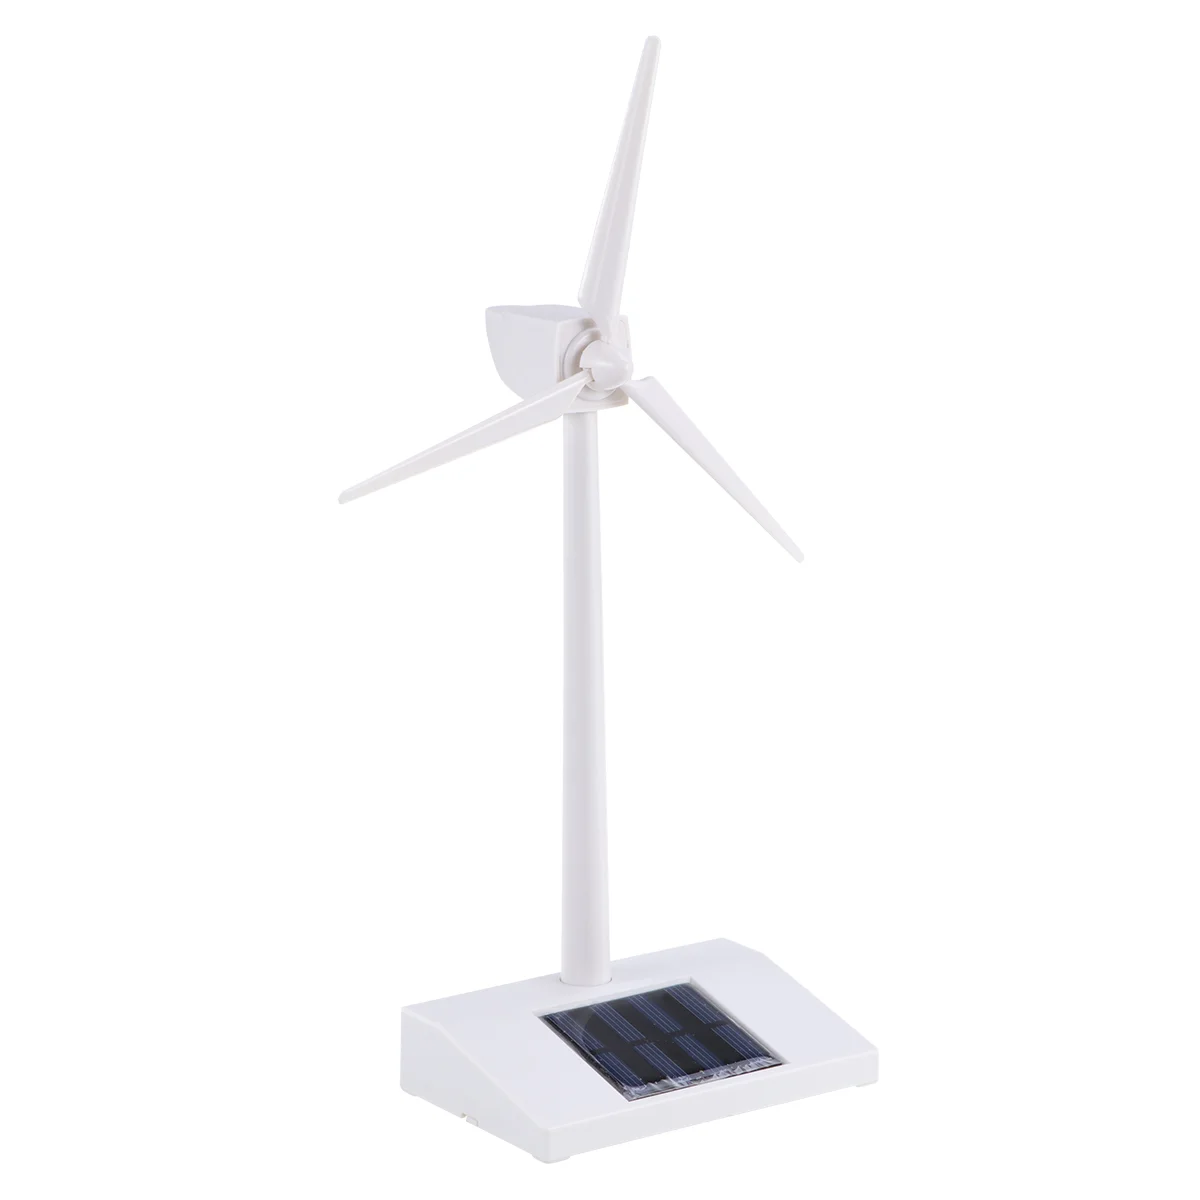 

Настольная ветряная турбина модель ветряные мельницы на солнечных батареях ABS пластик белый для обучения или развлечений